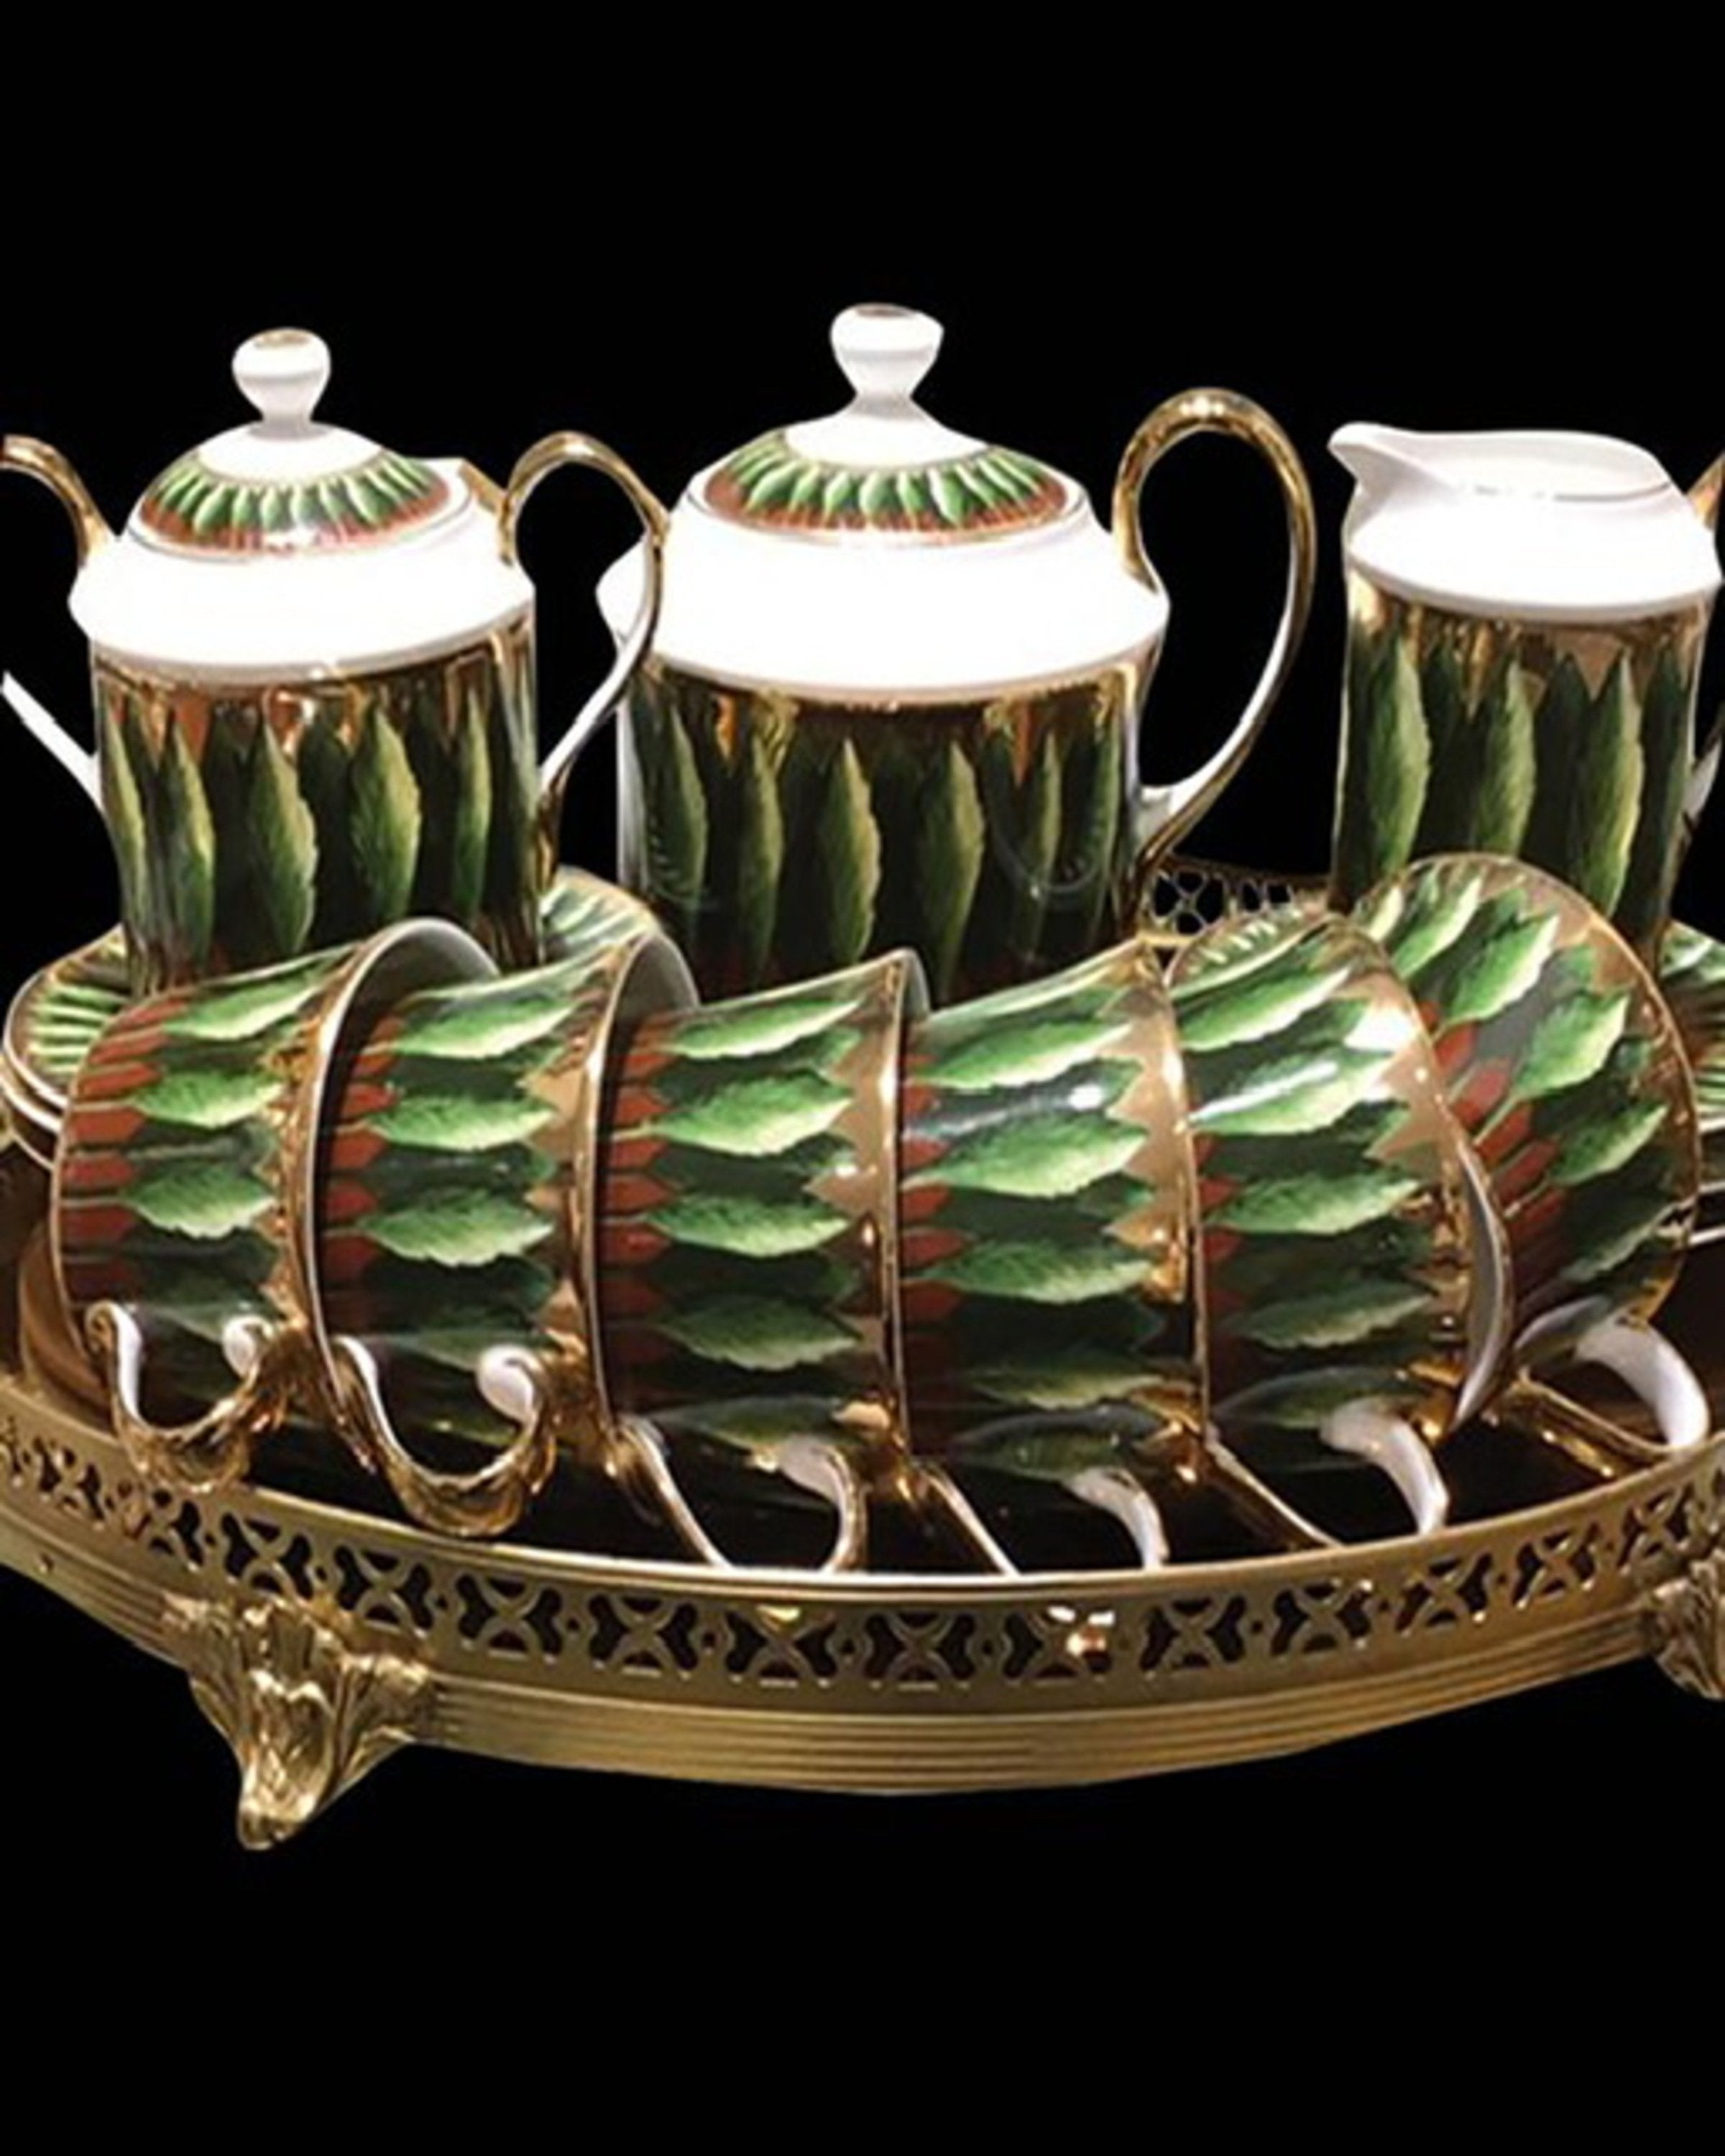 Buy Tea Cup Set of 6 Online India